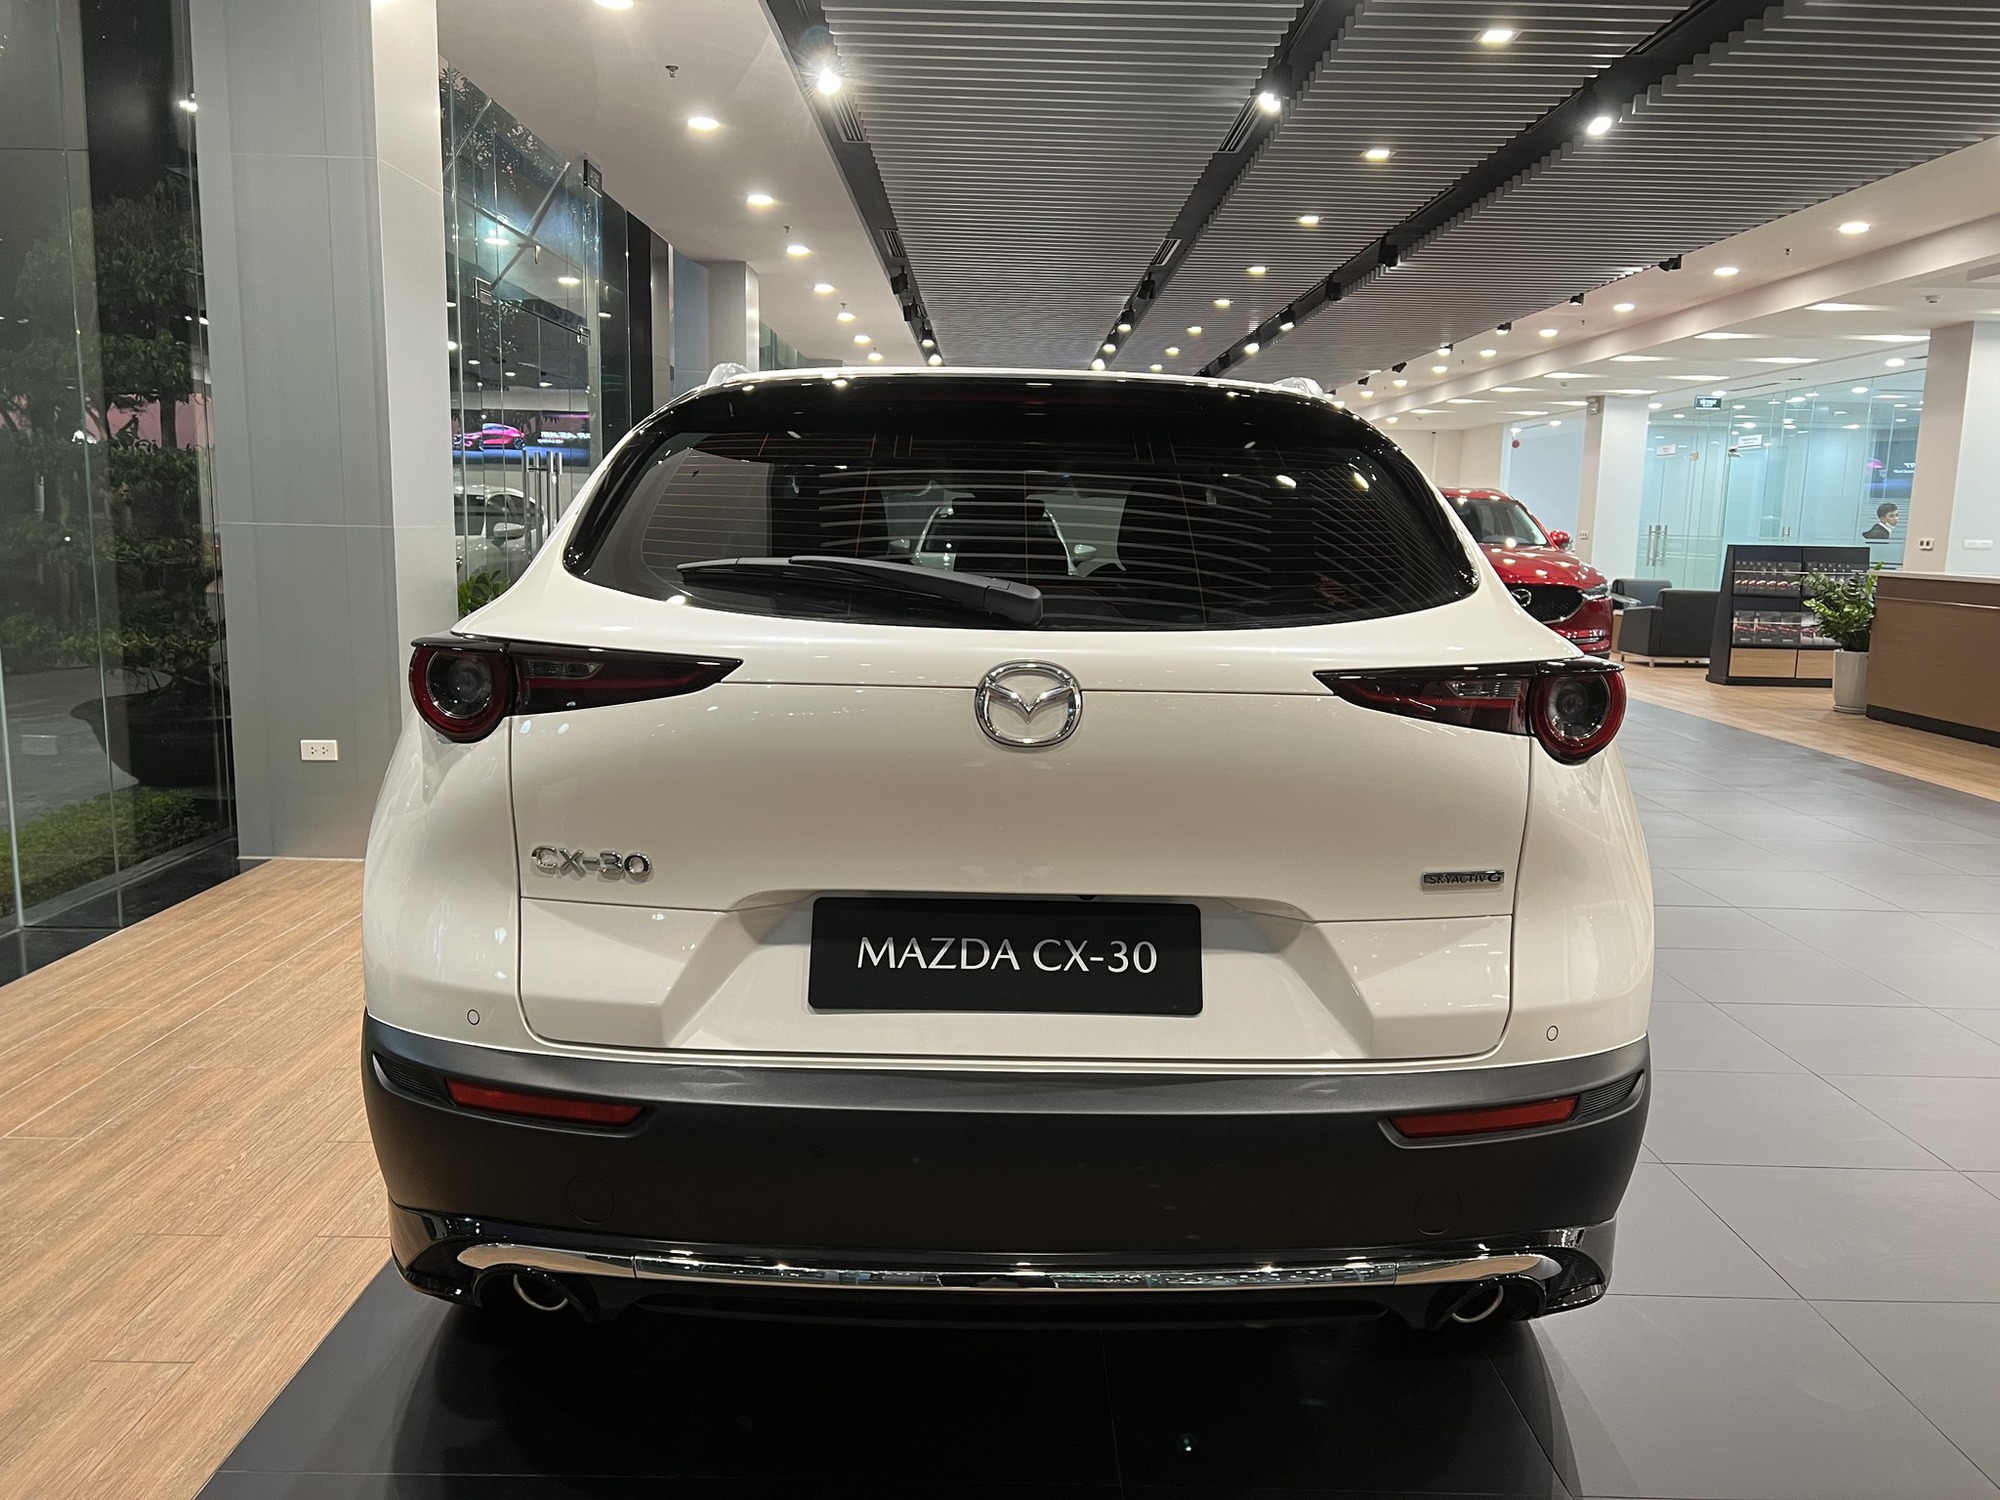 Mazda CX-30 bất ngờ tăng giá 25 triệu, giá khởi điểm gần ngang Honda HR-V - Ảnh 4.